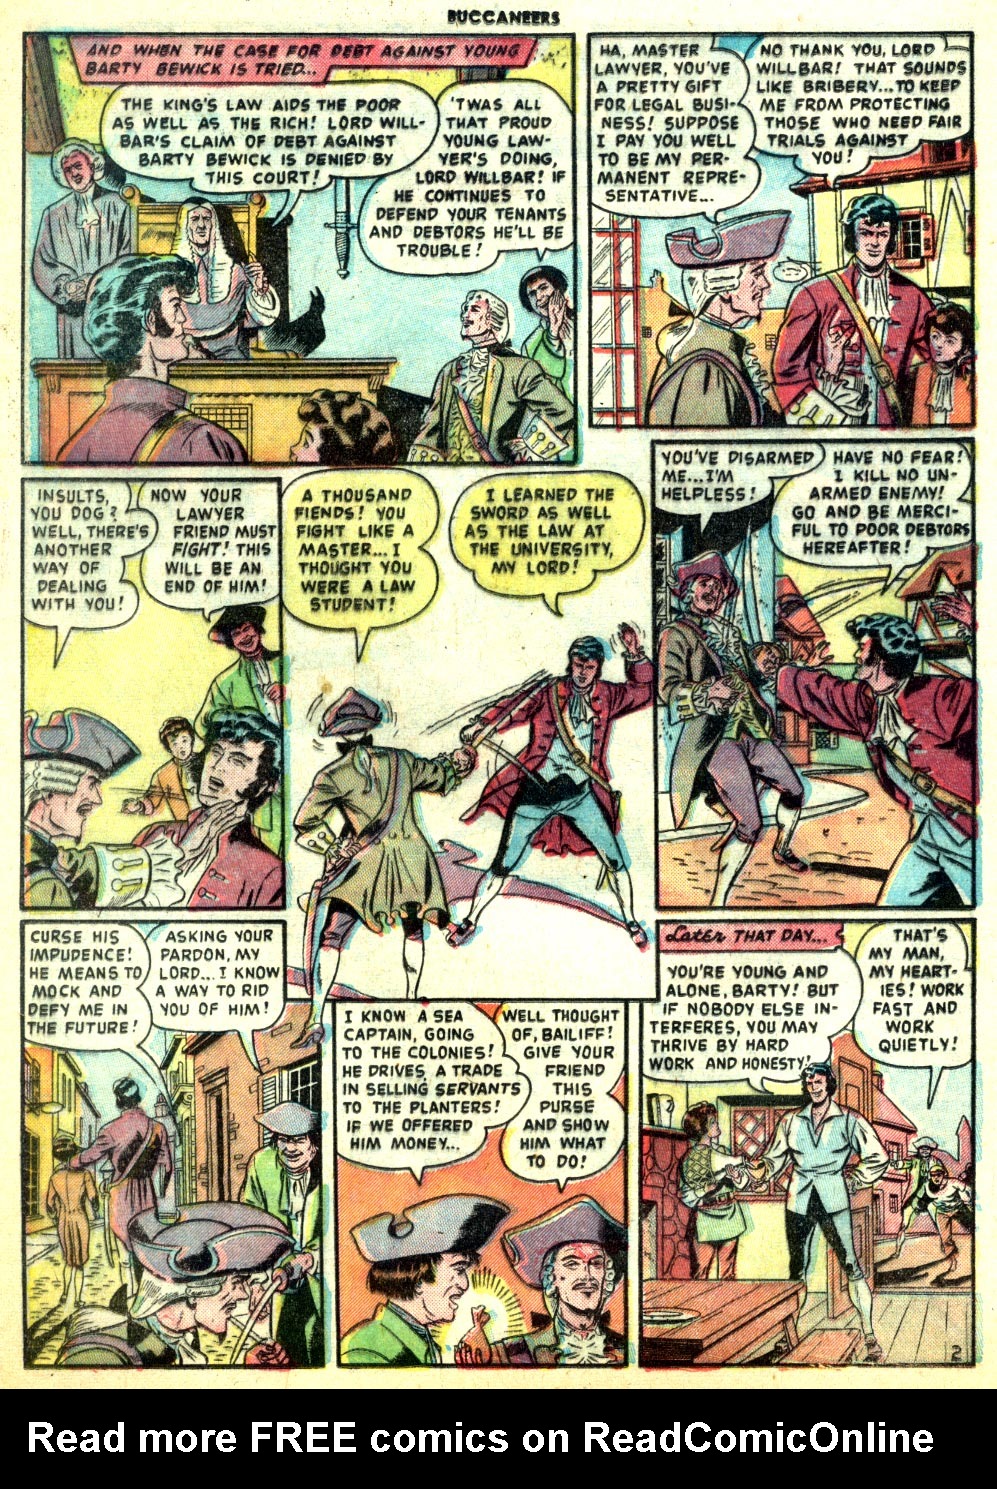 Read online Buccaneers comic -  Issue #19 - 28